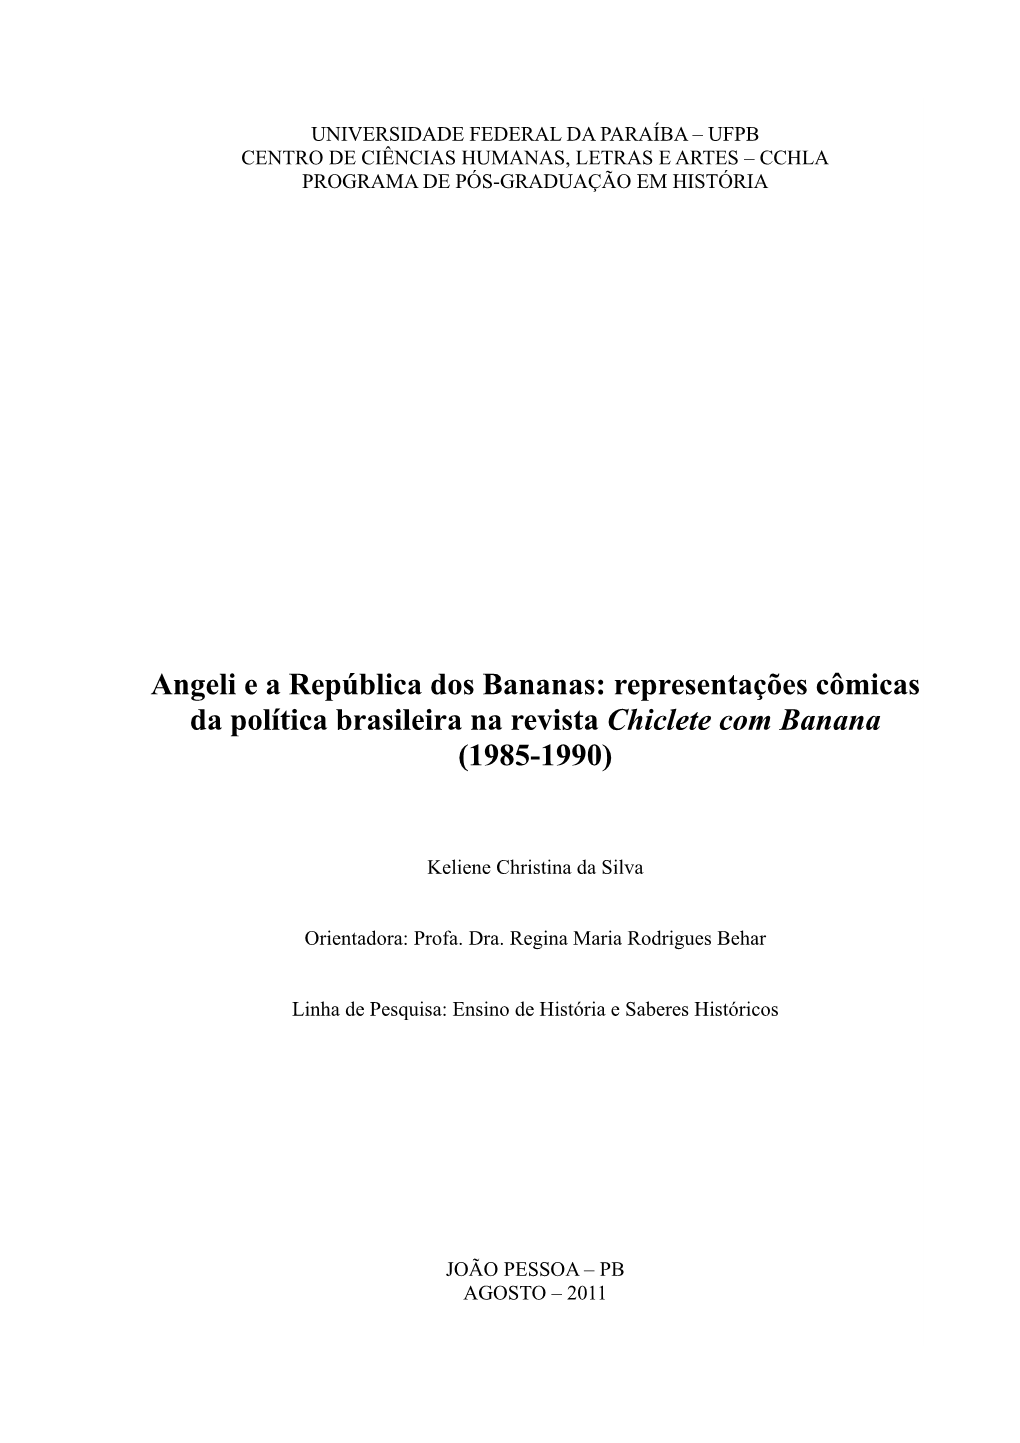 Angeli E a República Dos Bananas: Representações Cômicas Da Política Brasileira Na Revista Chiclete Com Banana (1985-1990)